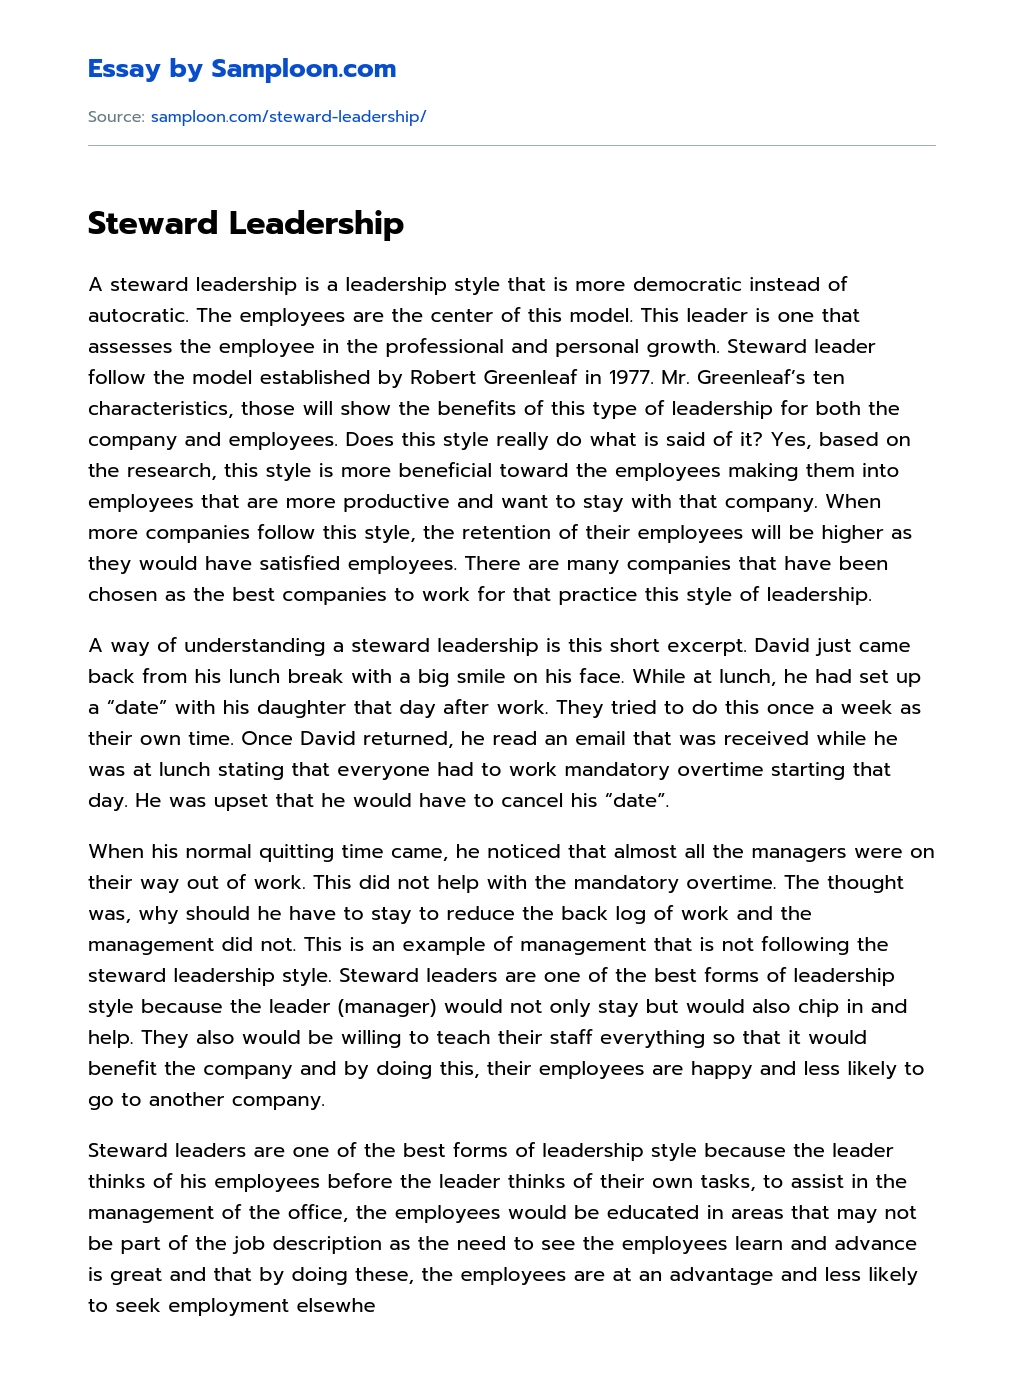 Steward Leadership Argumentative Essay essay